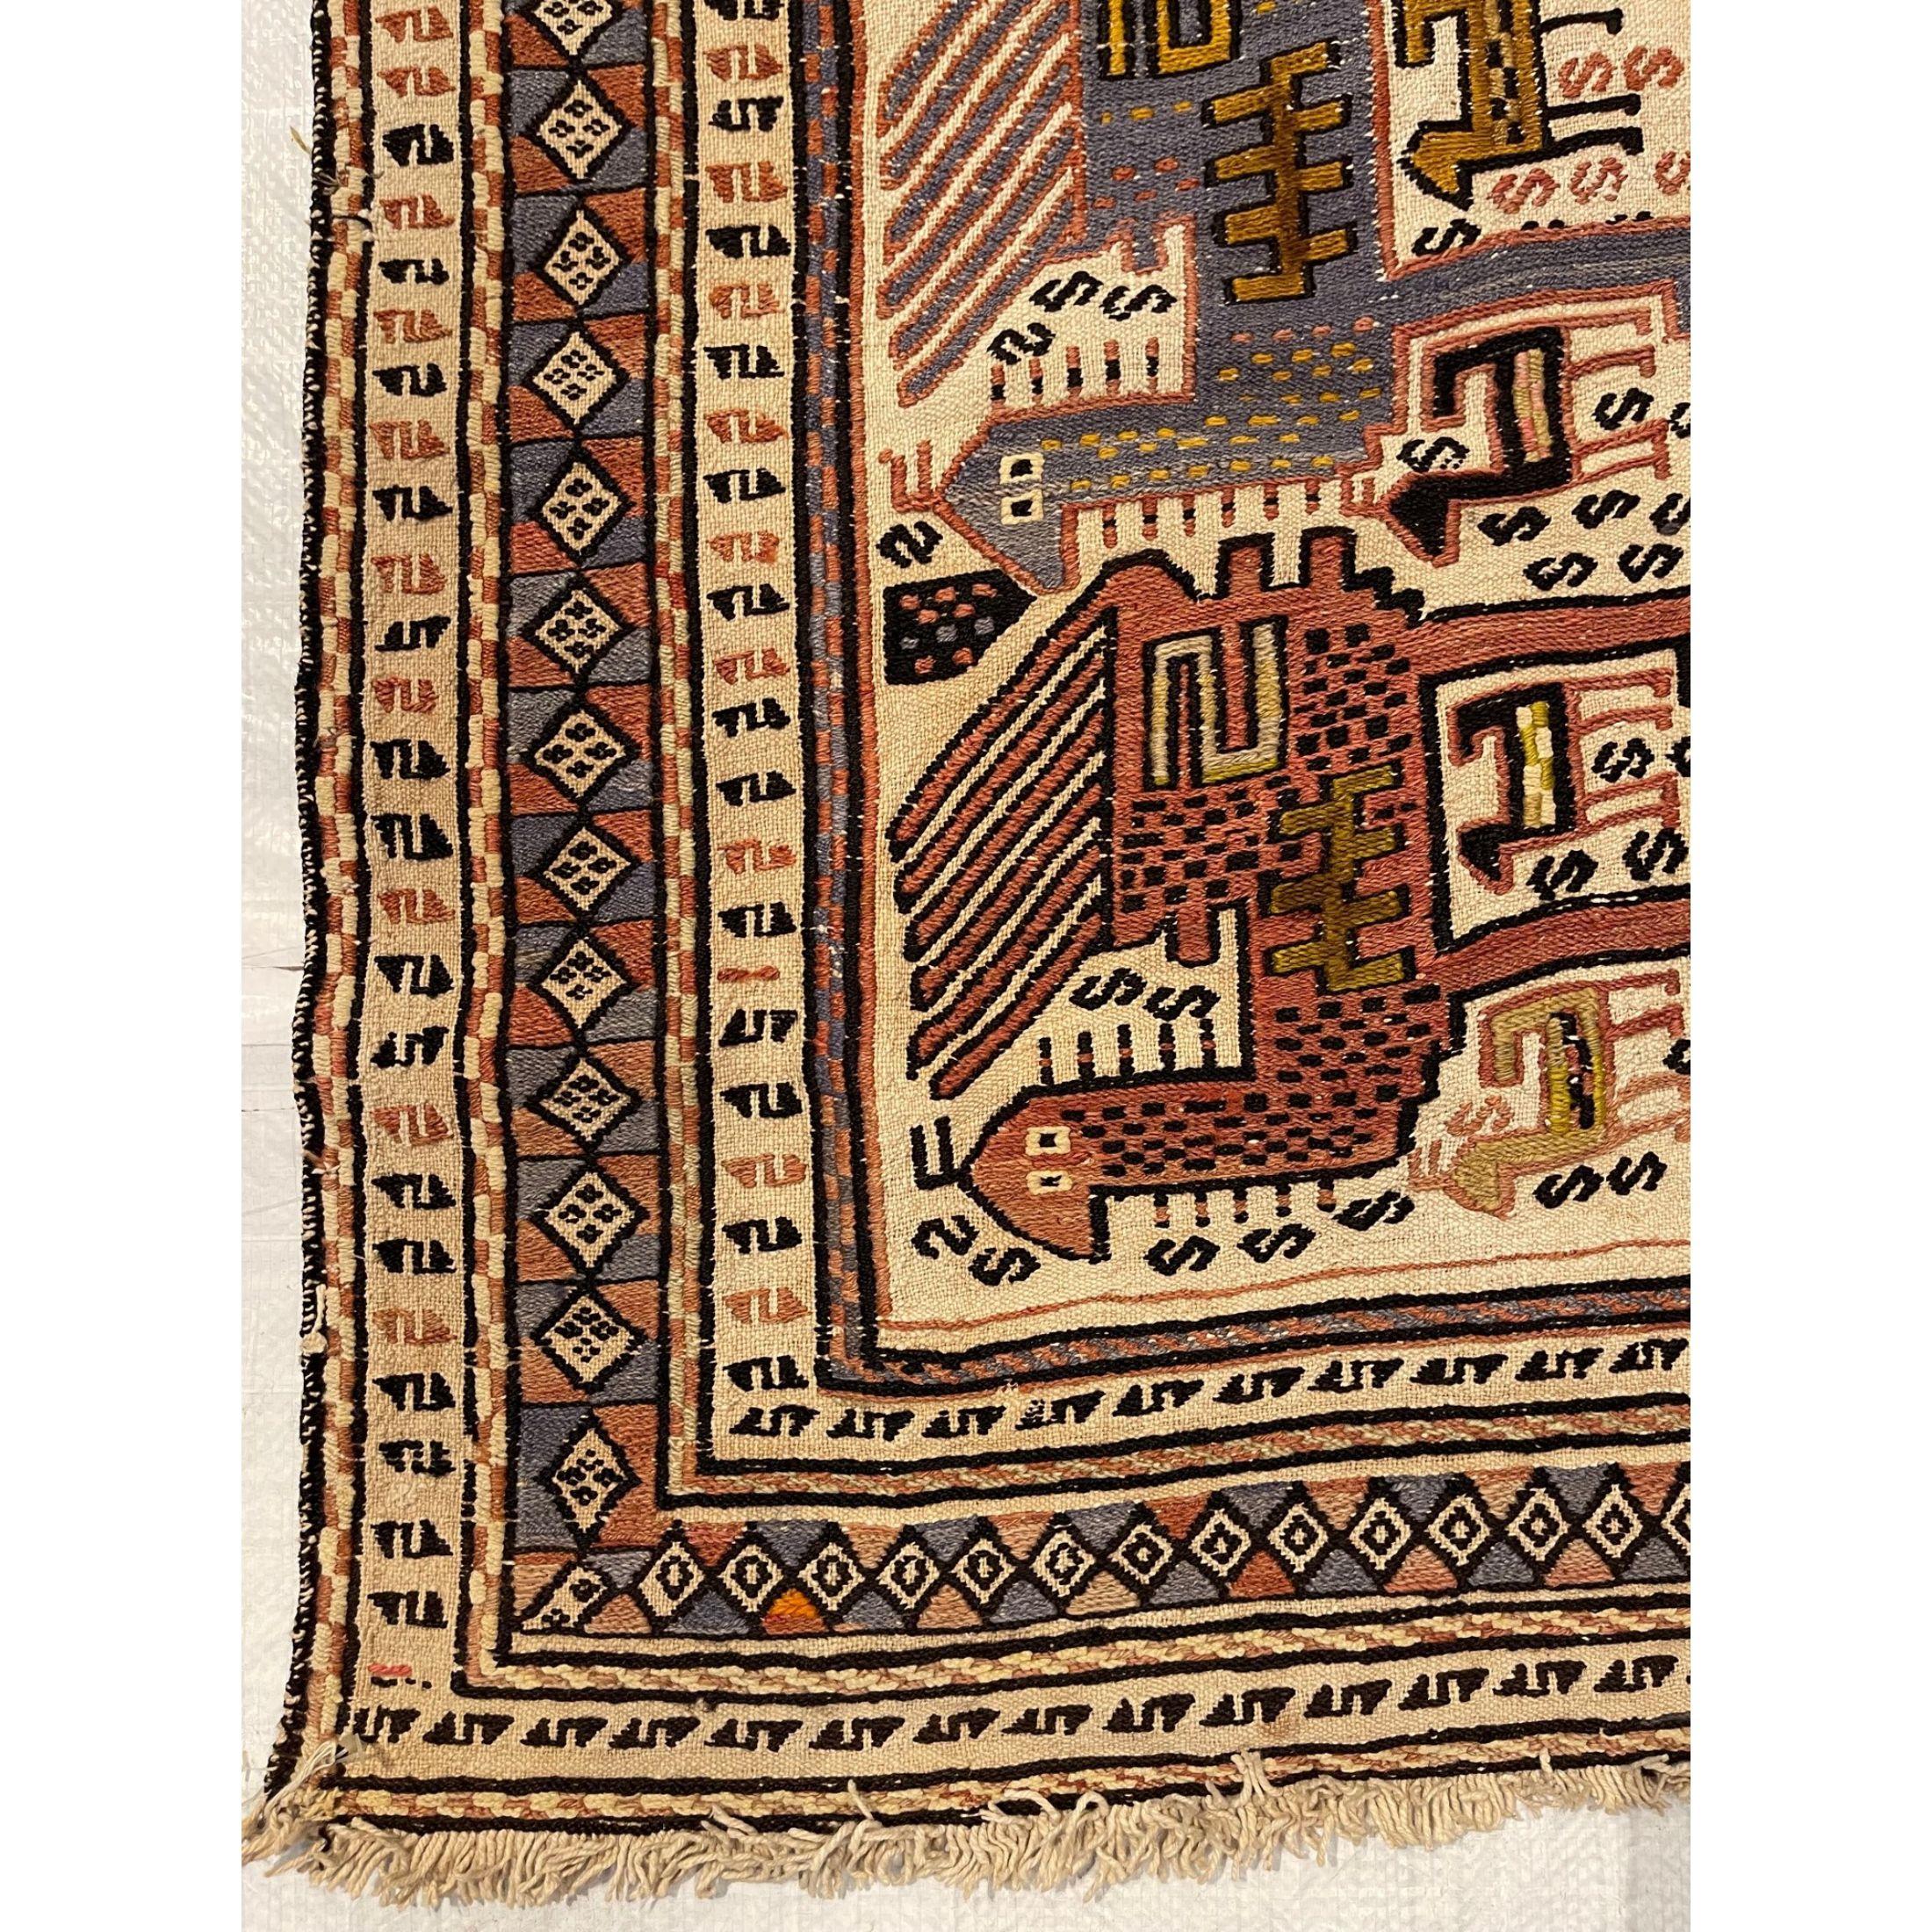 Tribal Shahsavand - Authentique design antique en forme de camel en vente